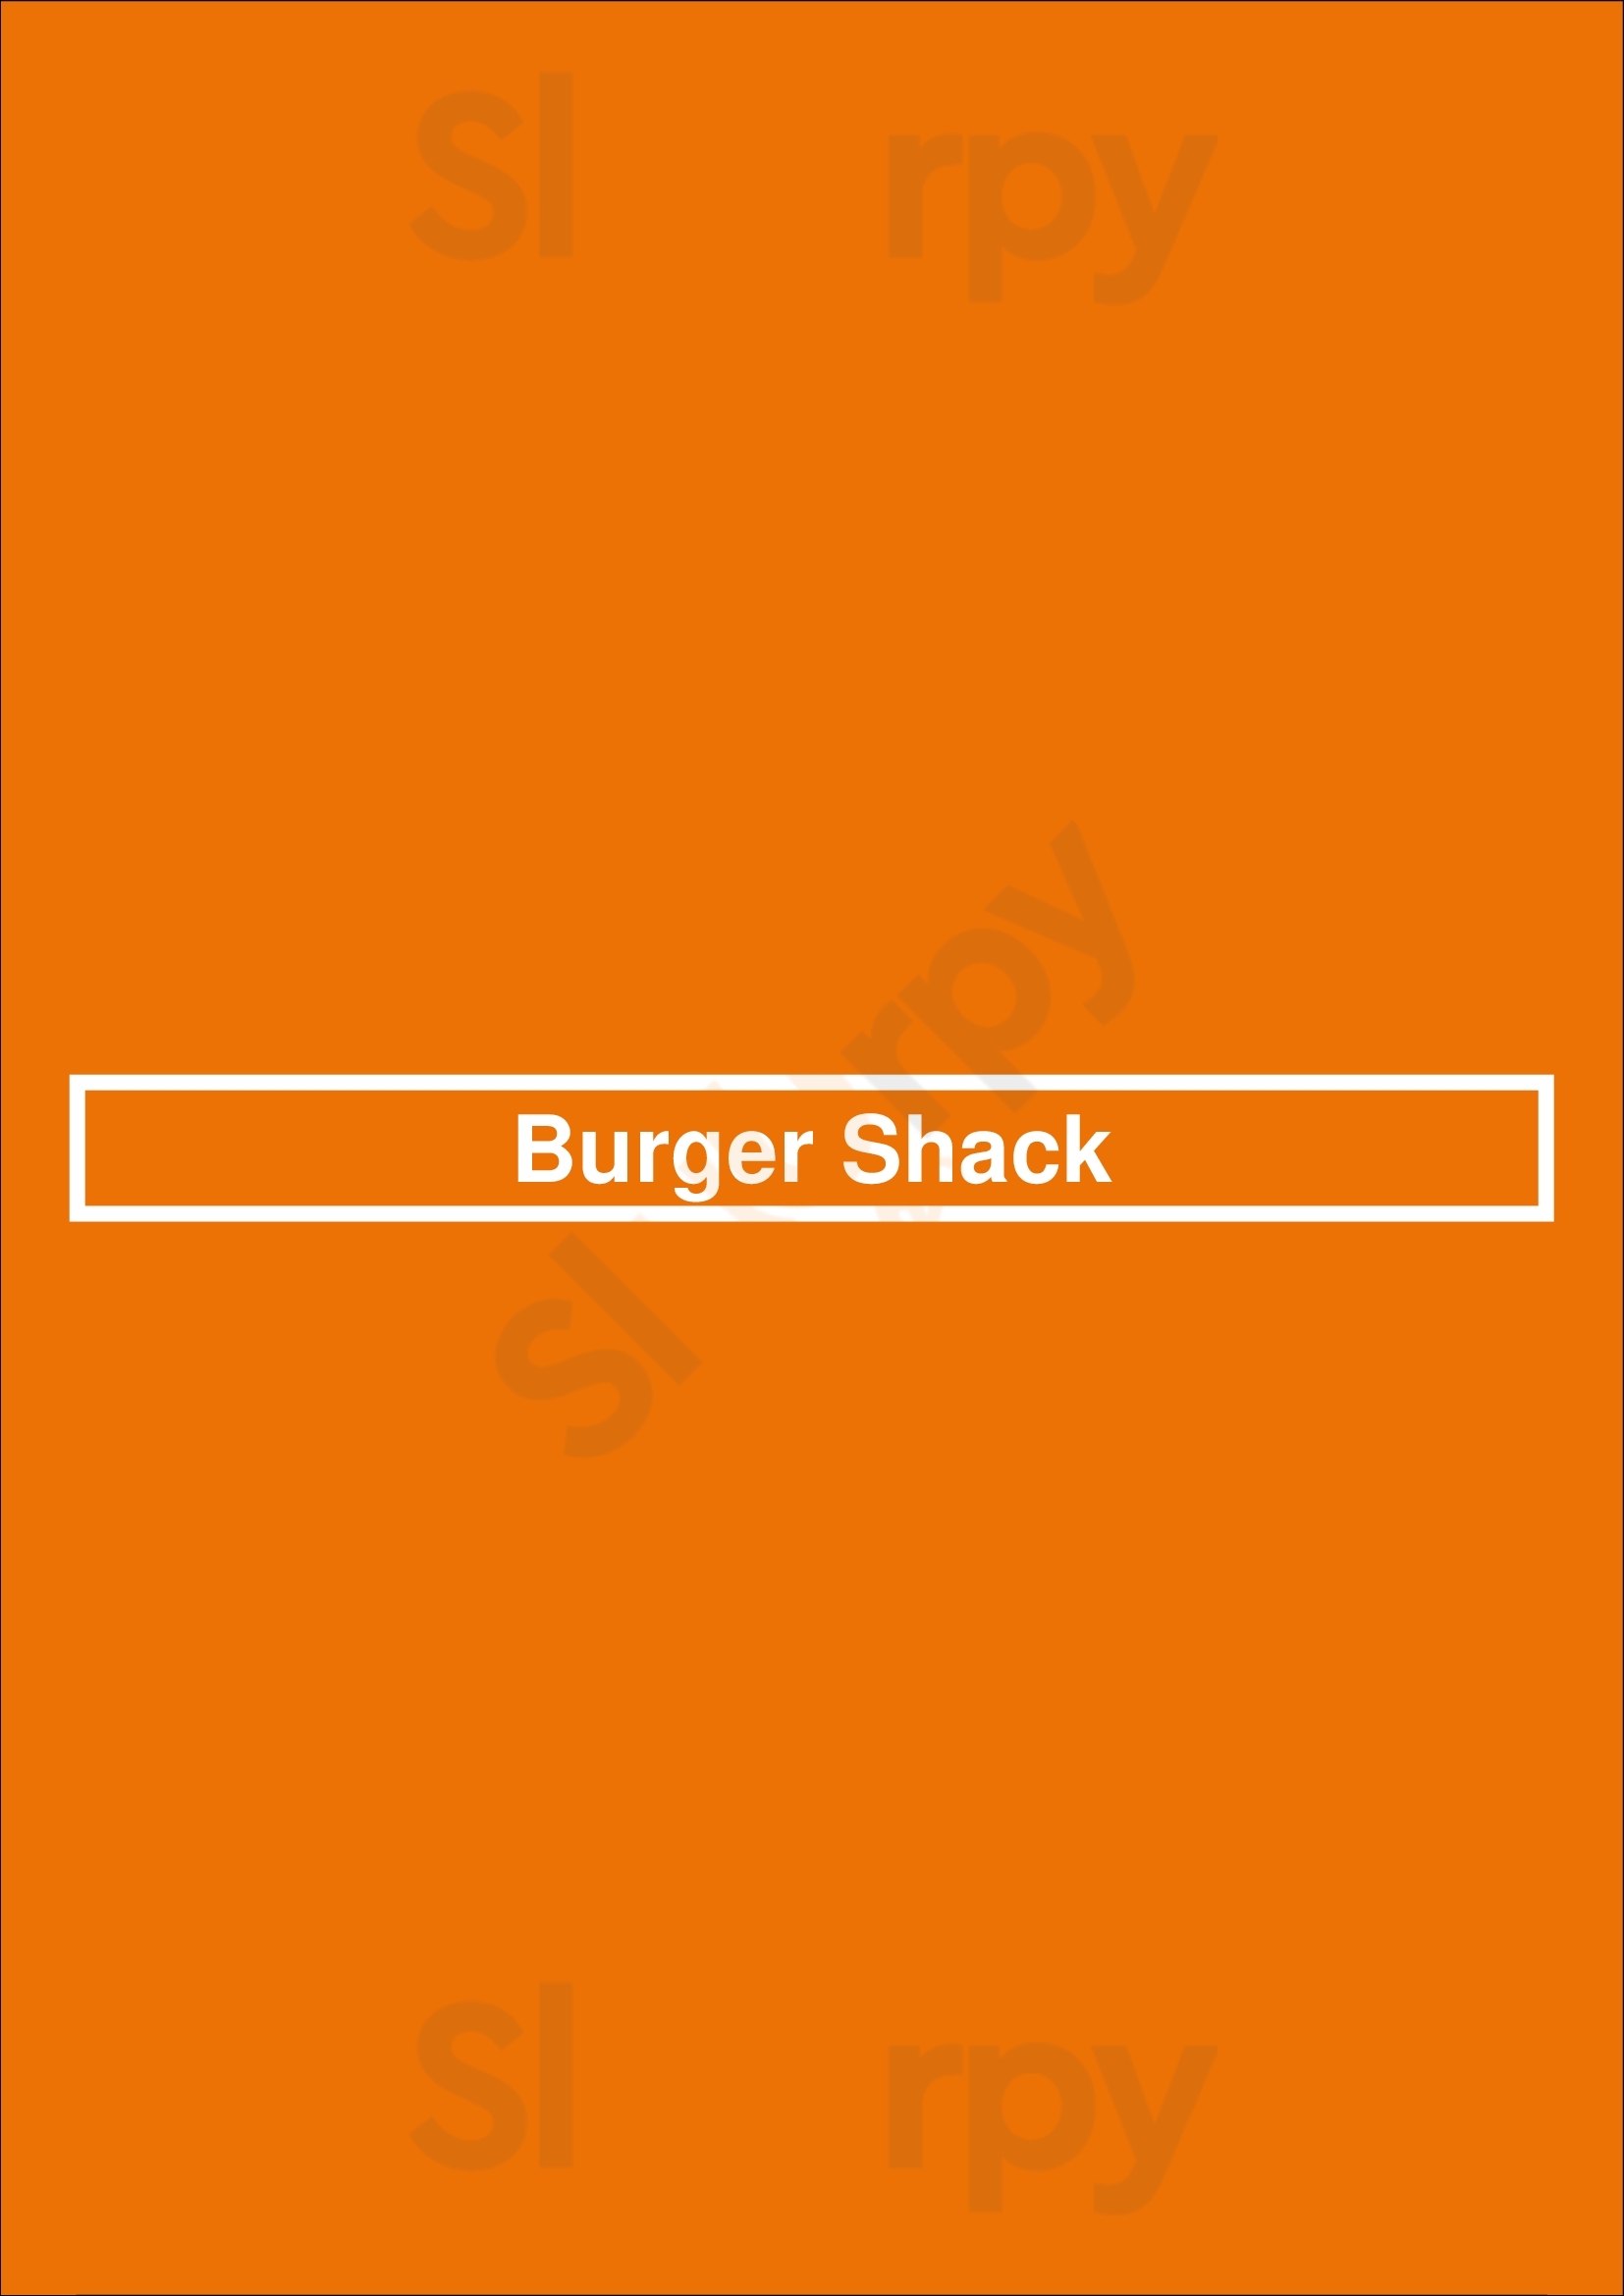 Burger Shack Houston Menu - 1